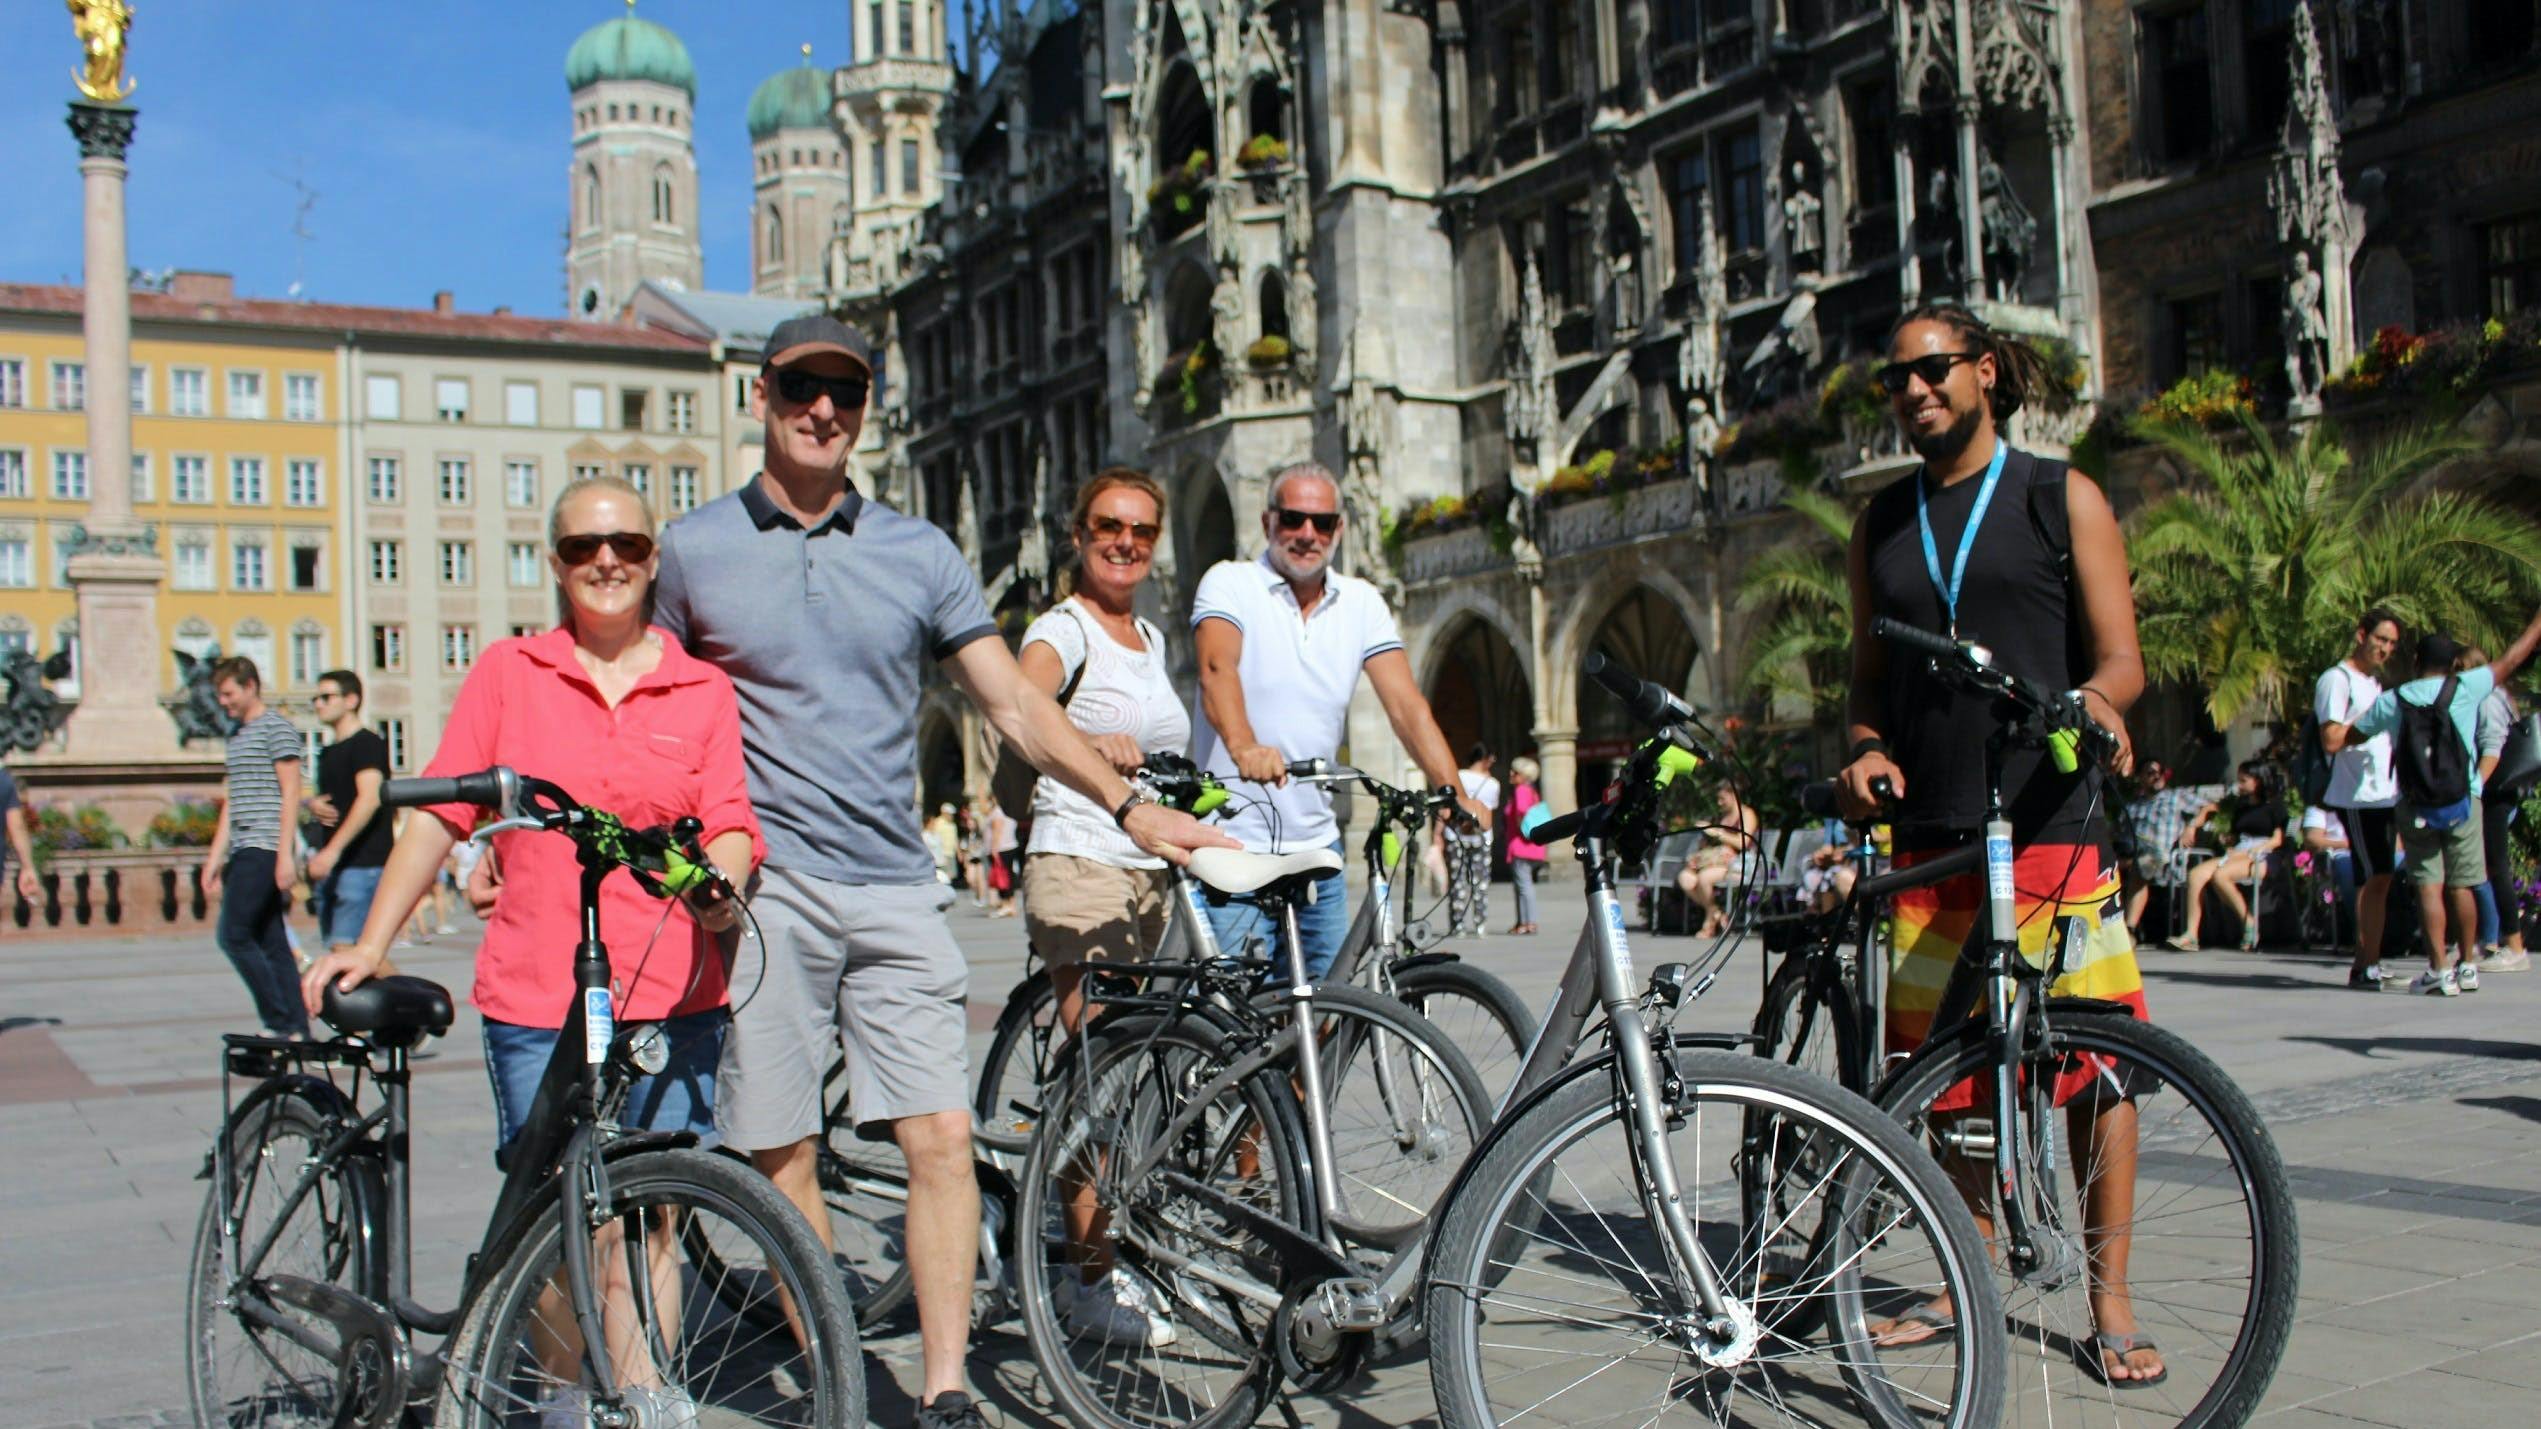 Stadstour München op de fiets